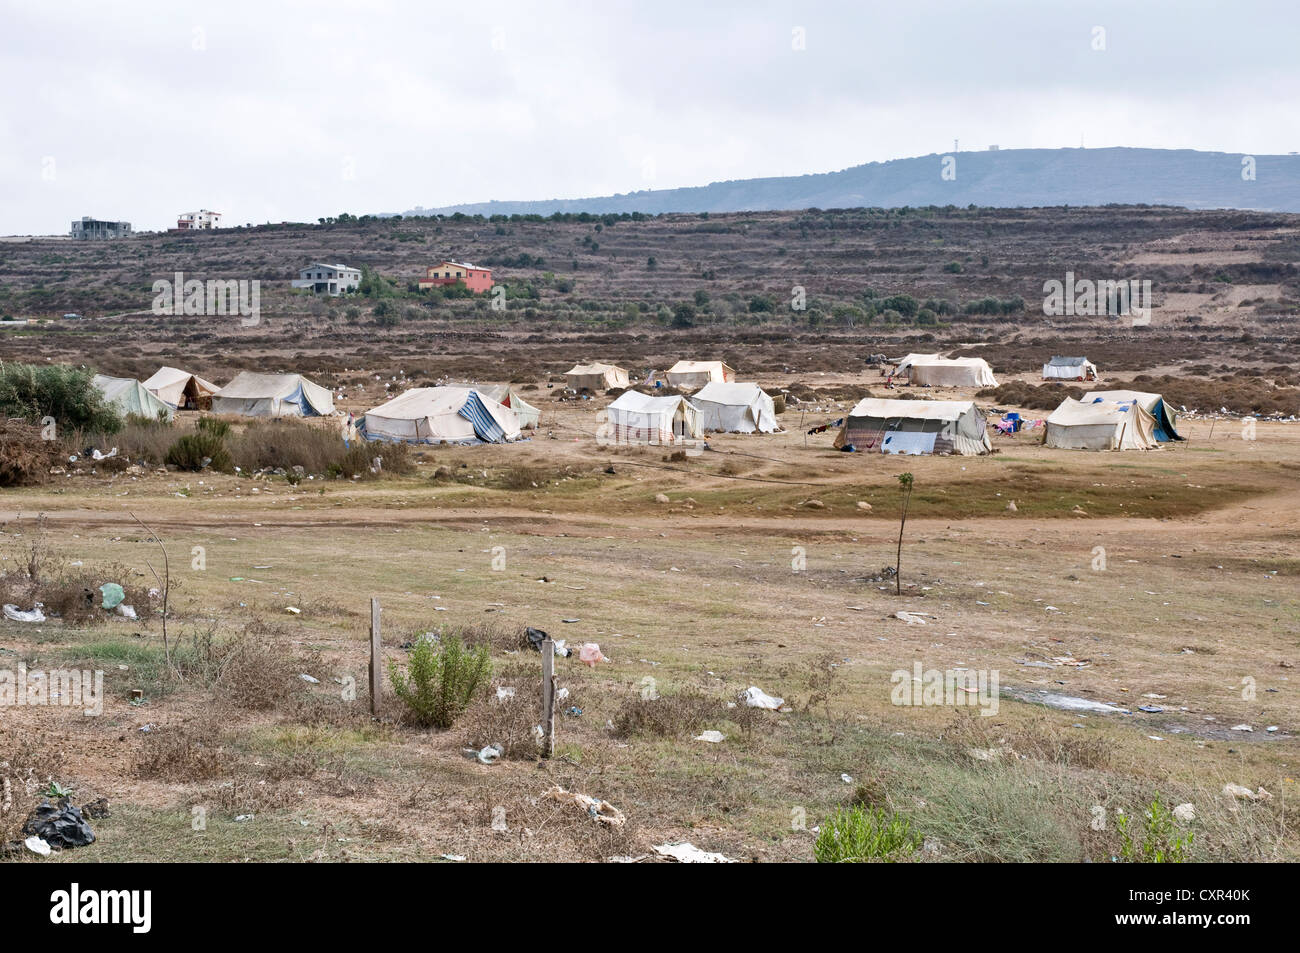 Ein Zeltlager für syrische Migranten in der nordlibanesischen Region Wadi Khaled, südlich der syrisch-libanesischen Grenze. Stockfoto